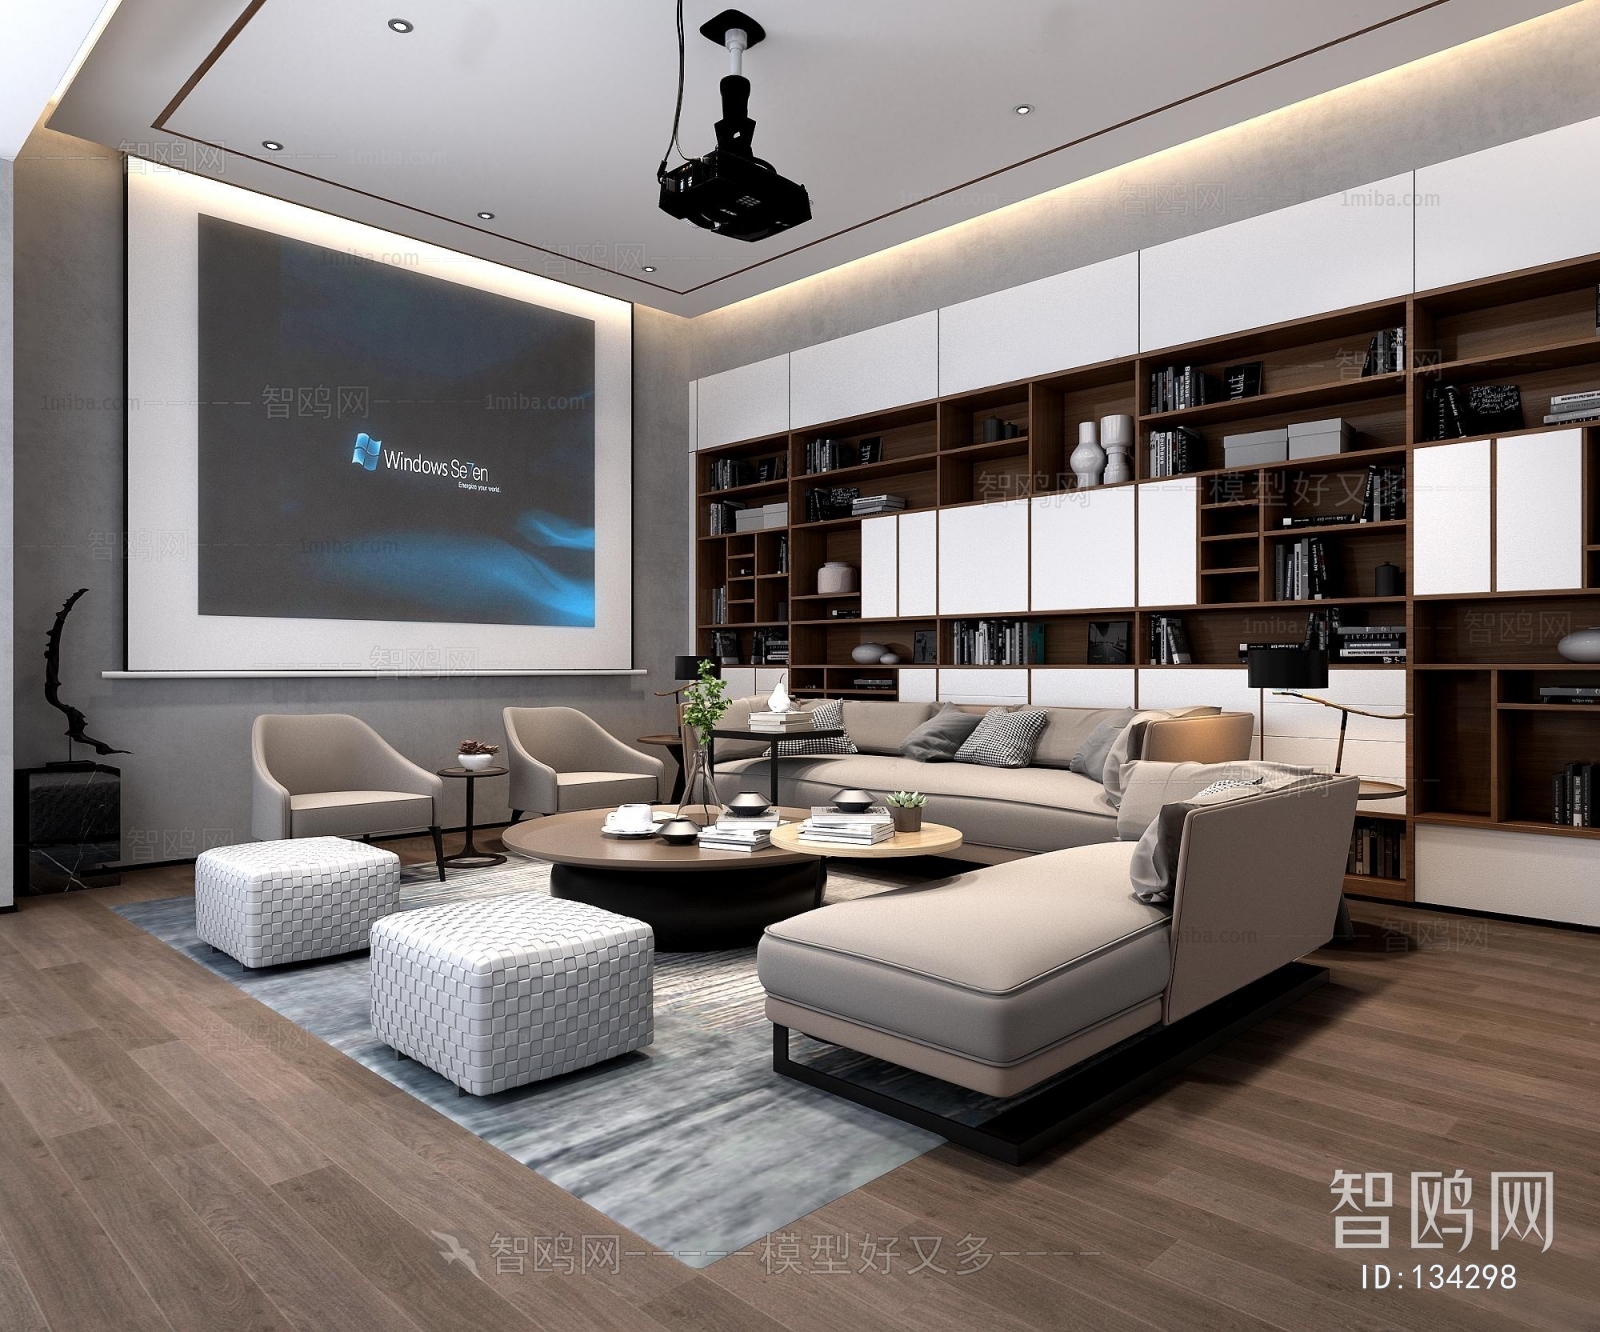 Modern Office Living Room